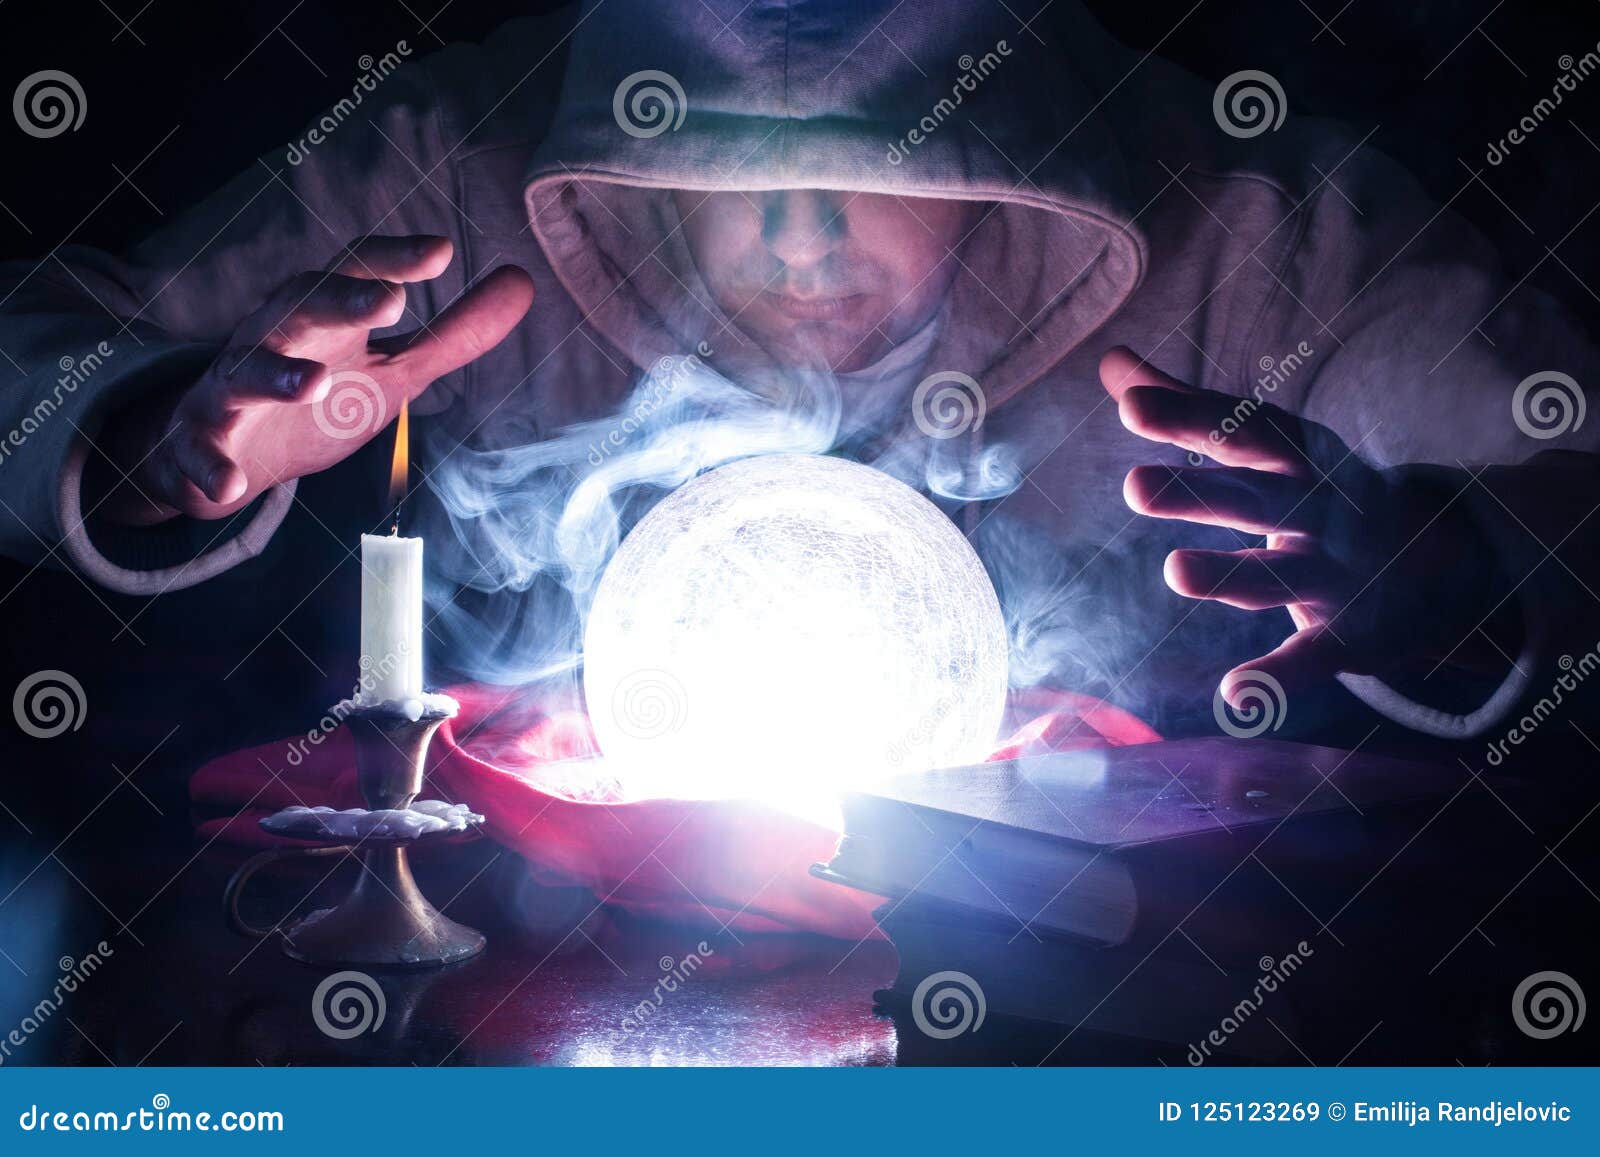 zauberer-mit-haube-und-lichter-rauchen-magische-glaskugel-125123269.jpg